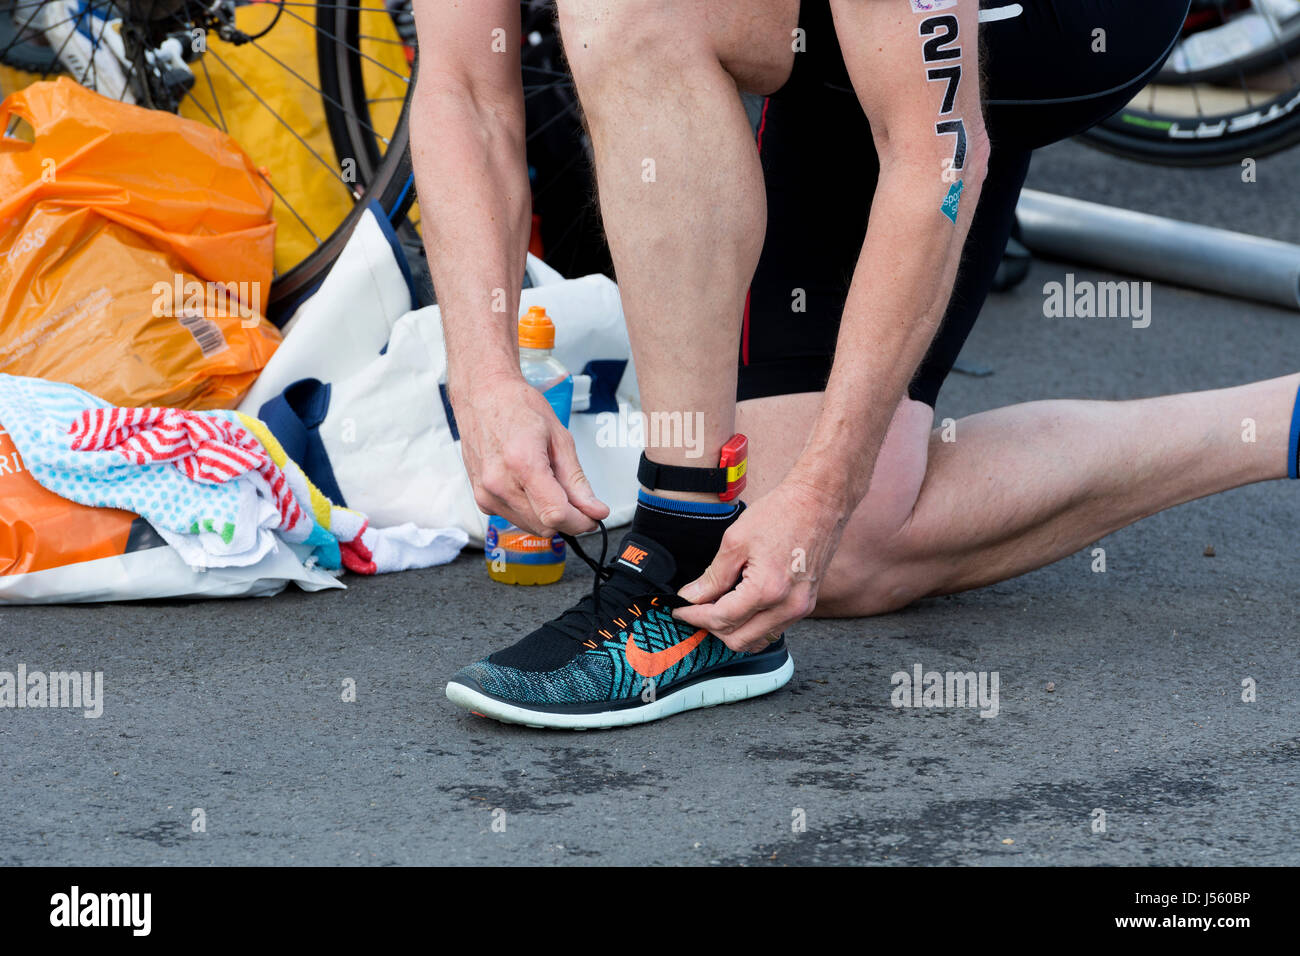 Männlichen Konkurrenten setzen auf Nike Laufschuhe, Übergang Bereich,  Stratford Triathlon, UK Stockfotografie - Alamy